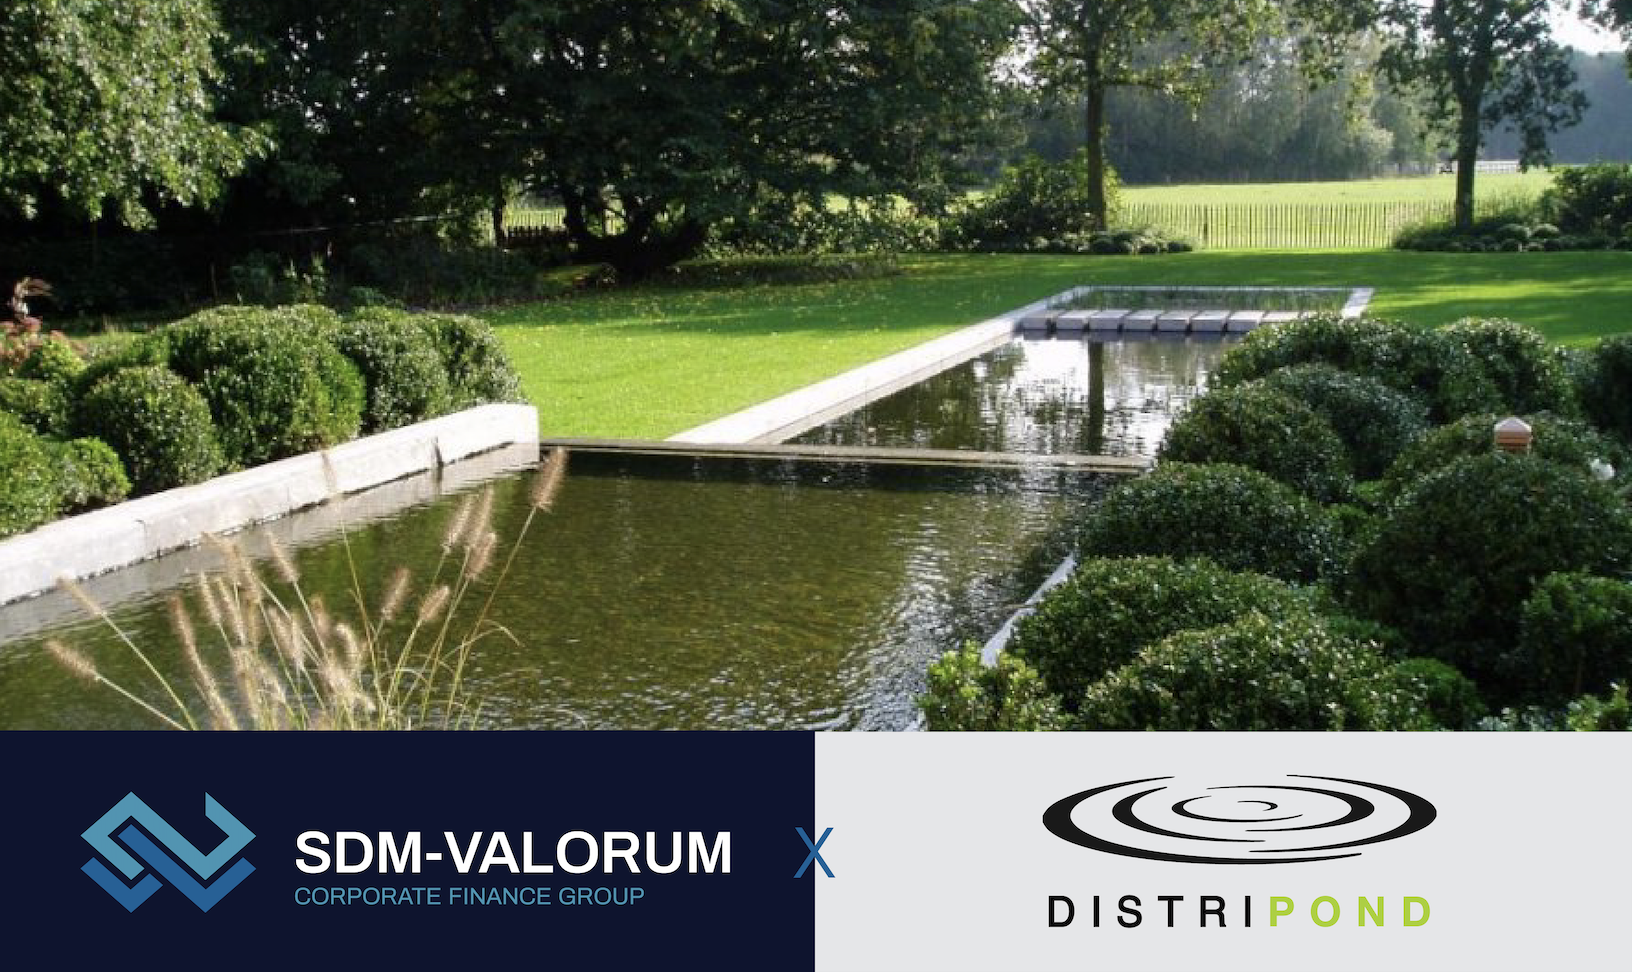 SDM begeleidt na Smart Deal nu ook succesvol de overname van Distri Pond door Nordic Waterproofing.